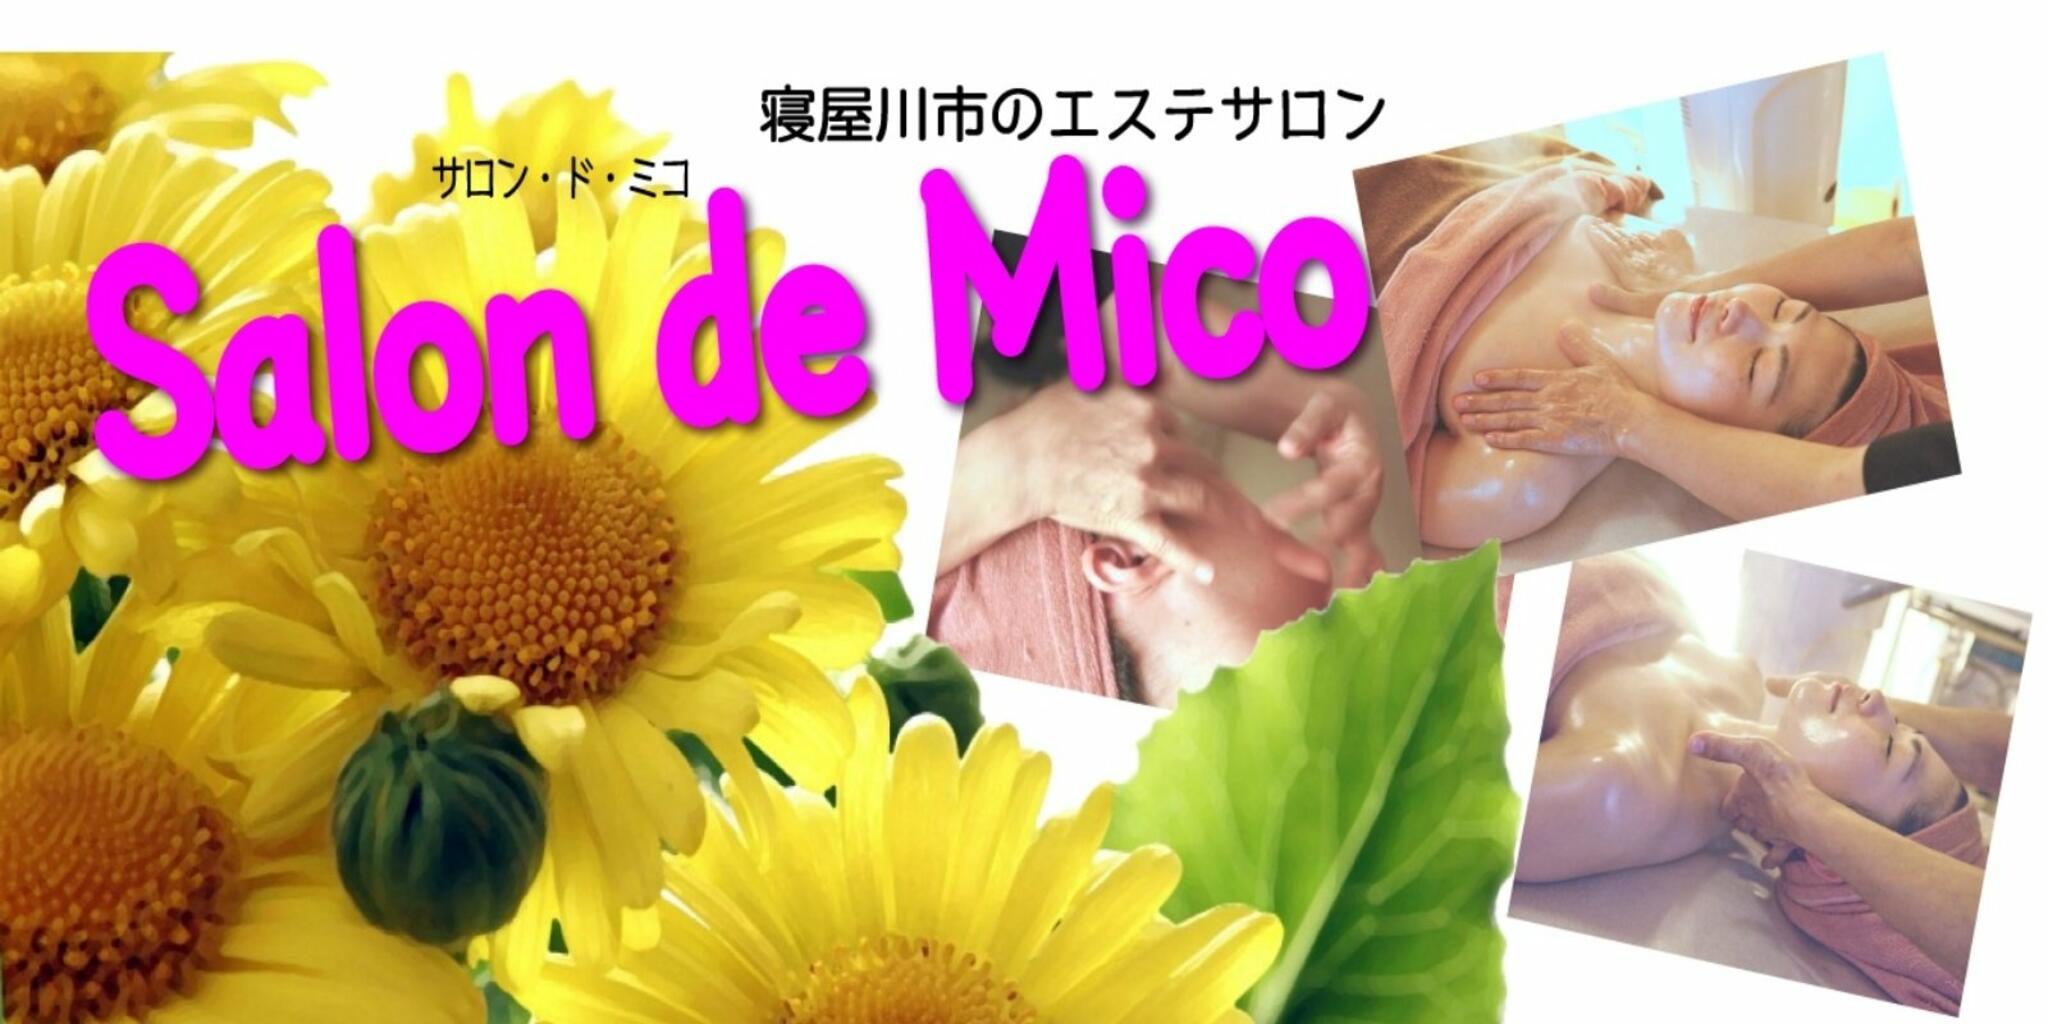 Salon de Micoの代表写真1